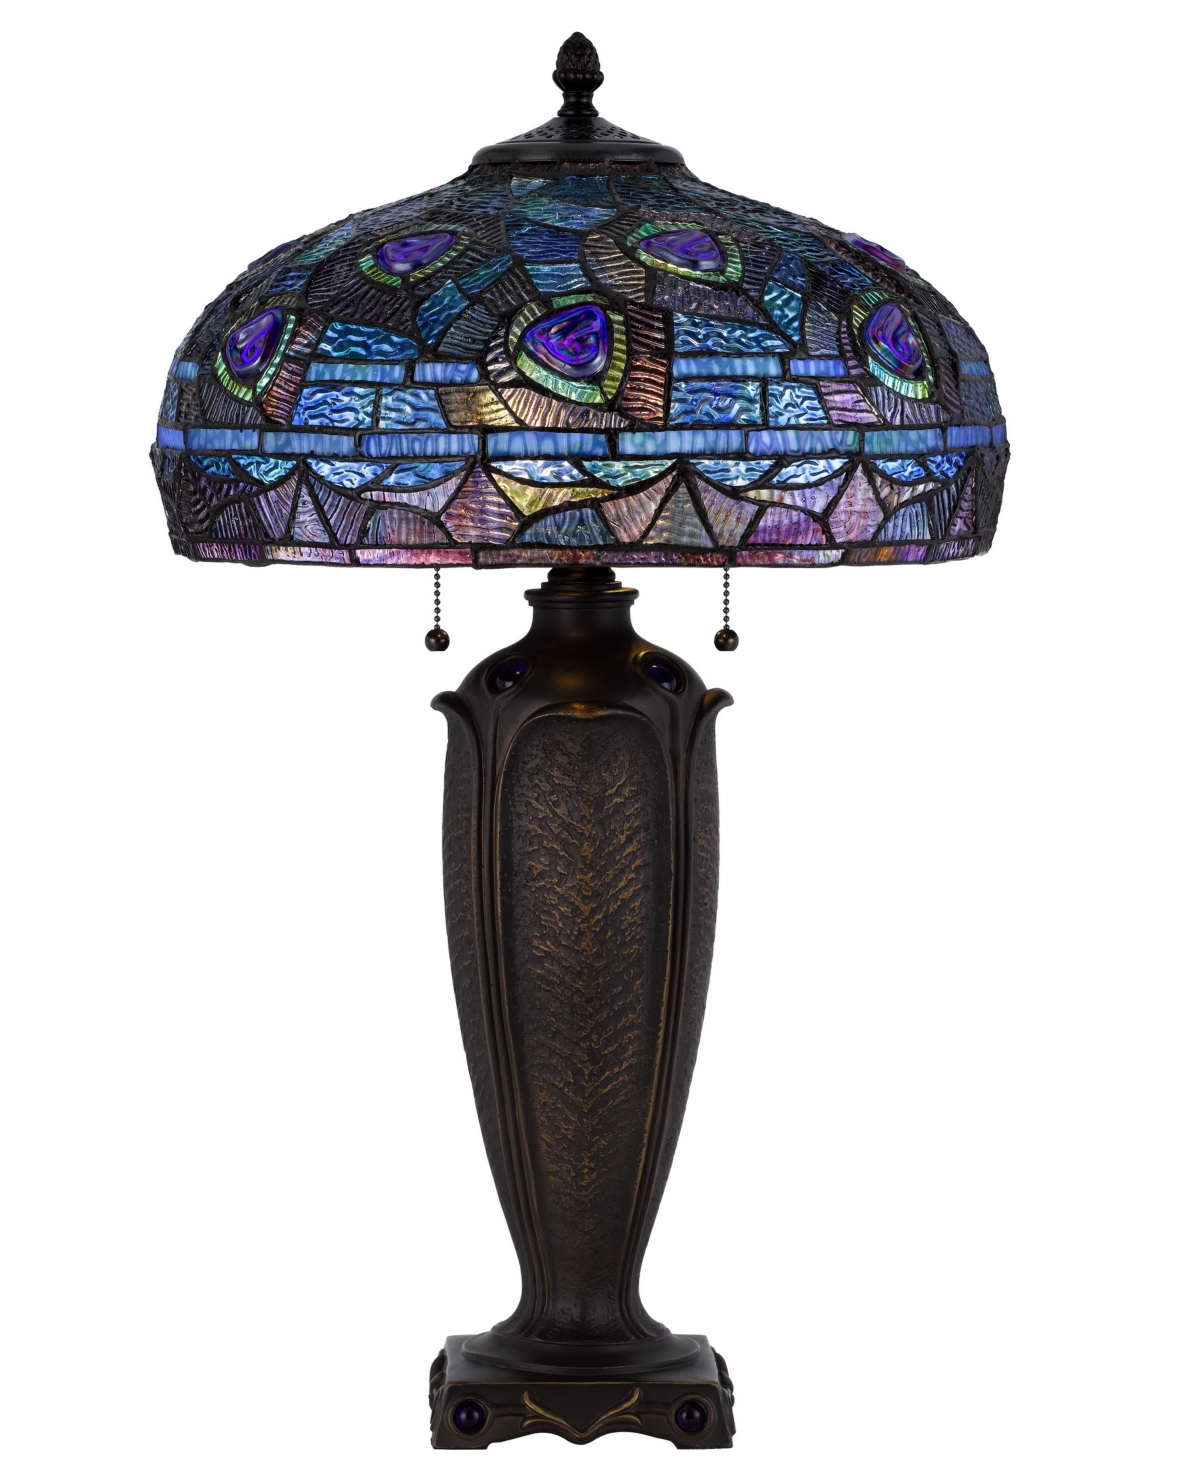 Cal Lighting 26" Height Metal And Resin Table Lamp In Dark Bronze